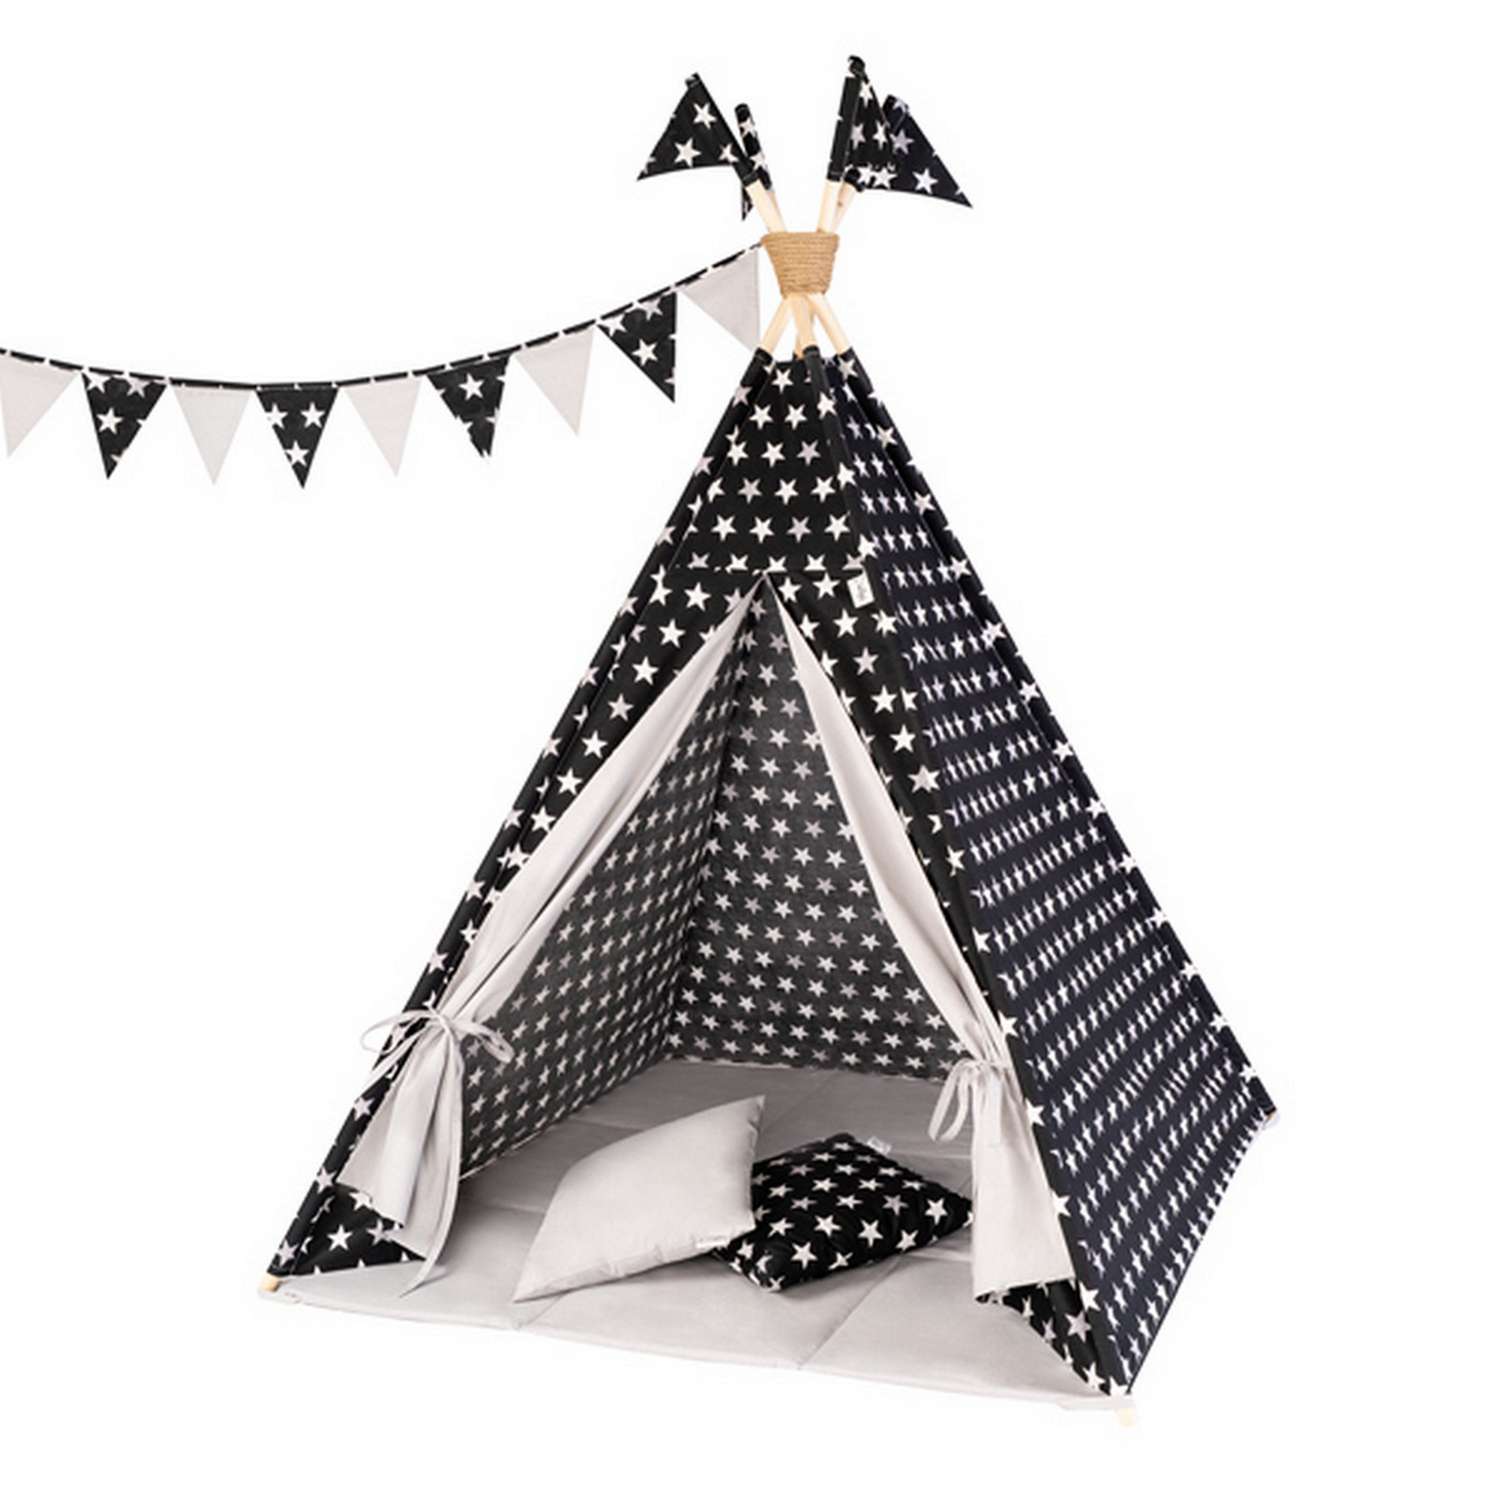 Детская игровая палатка вигвам Buklya Звезды цв. черный / серый - фото 1